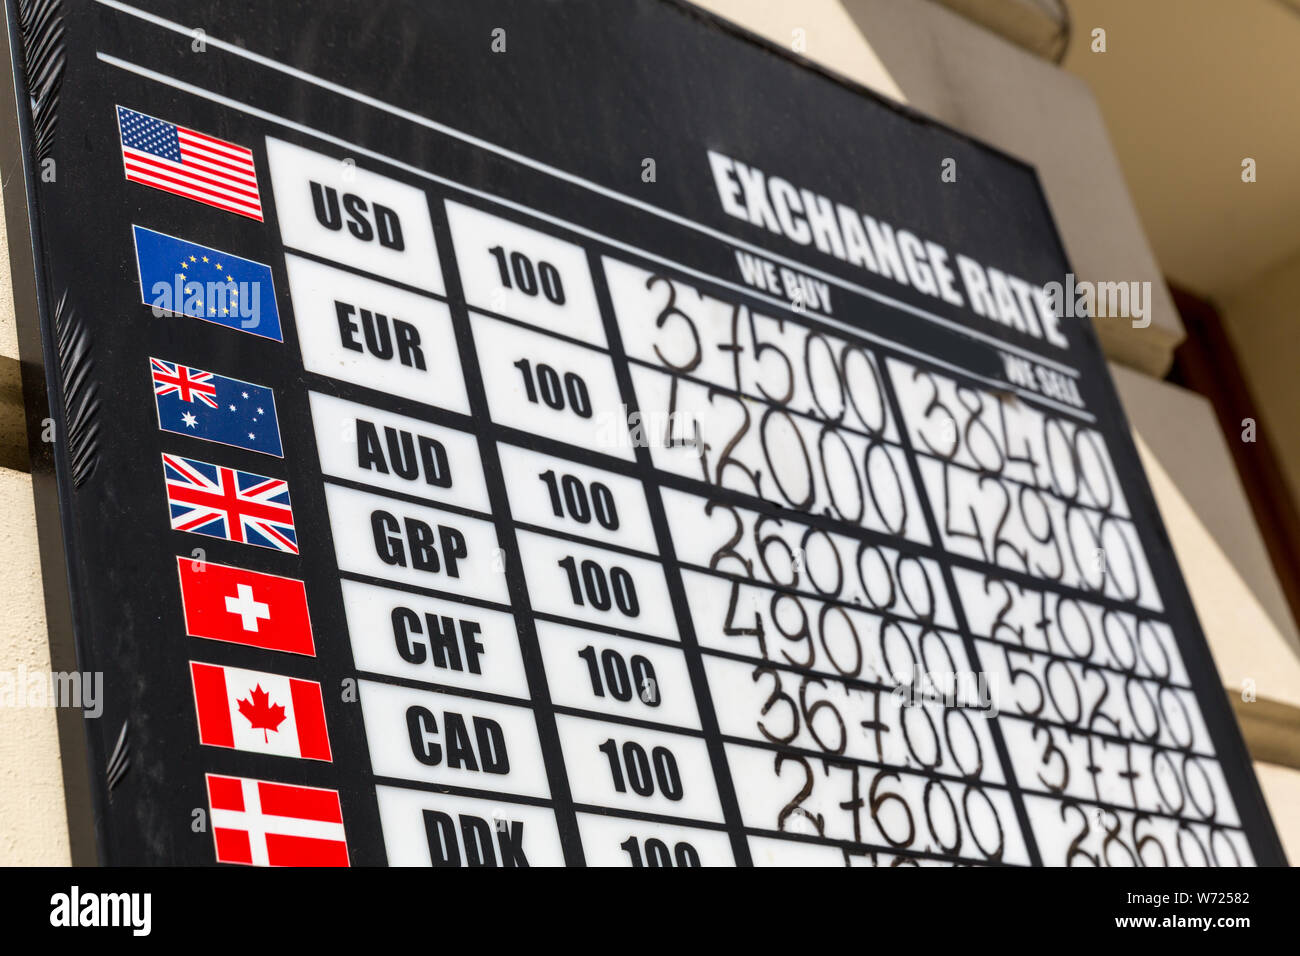 Wechselkurs board mit mehreren Währungen Stockfoto